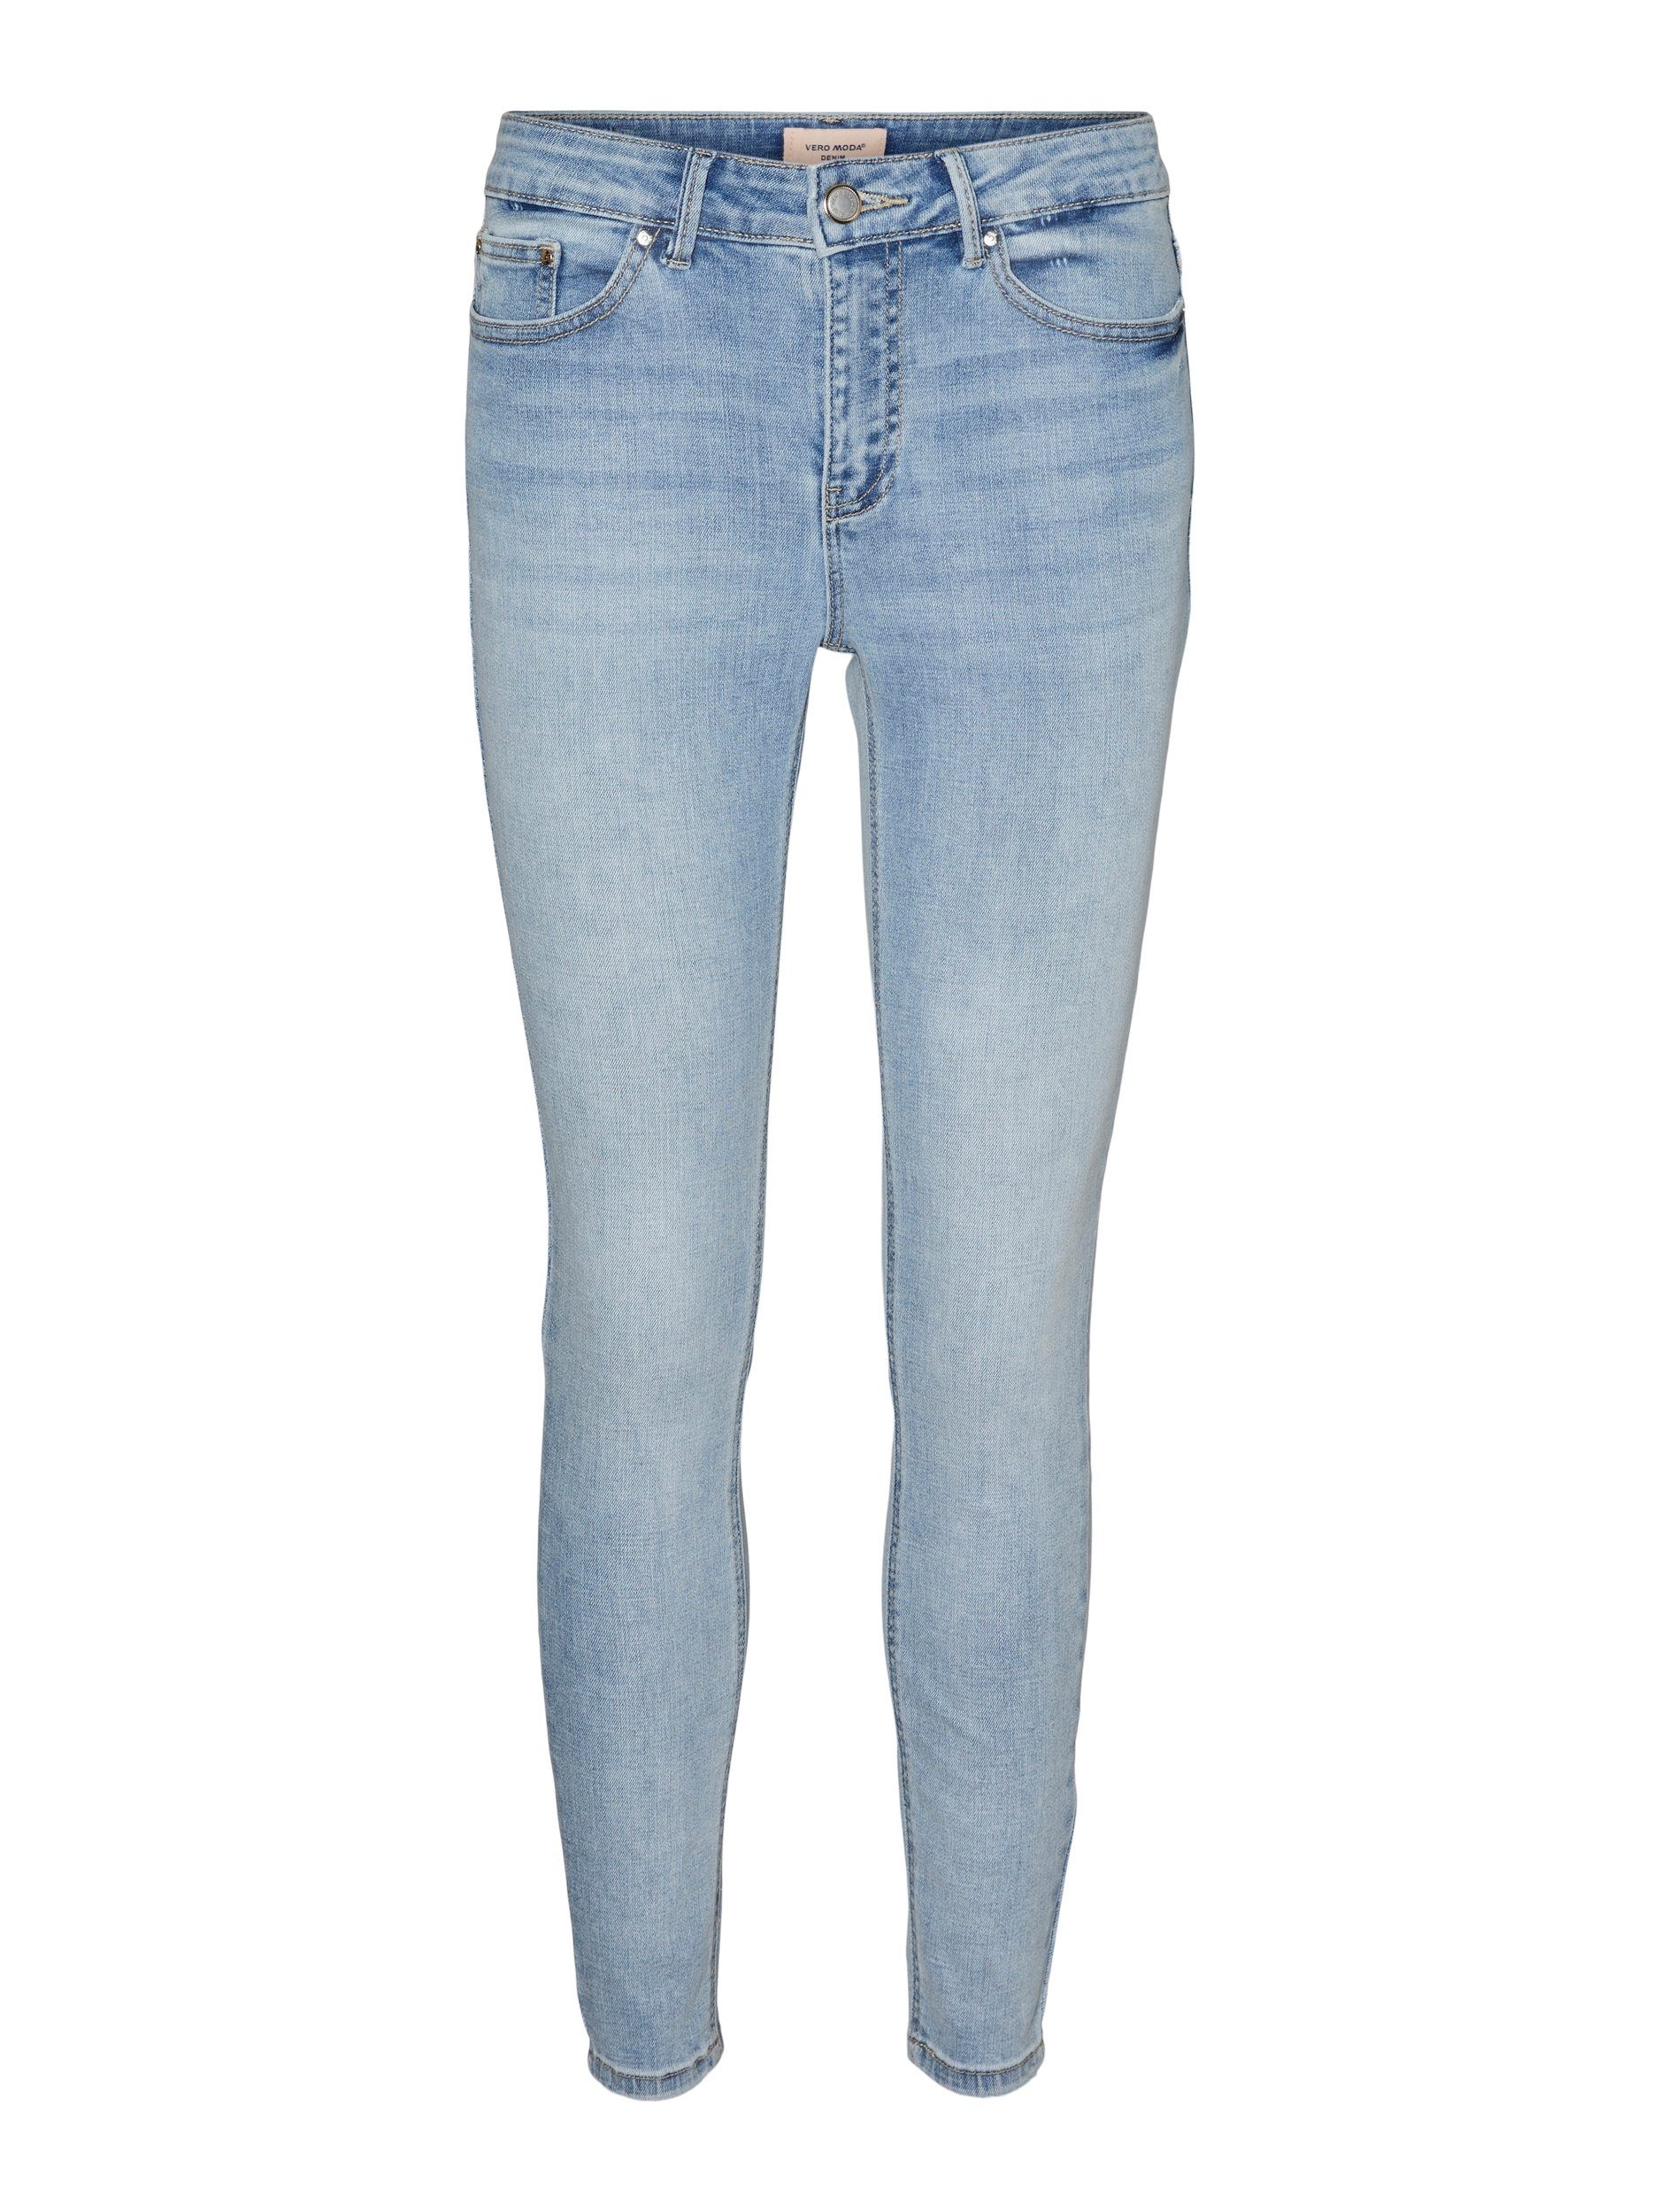 Vero Moda Skinny fit jeans VMFLASH MR SKINNY JEANS LI3102 GA NOOS